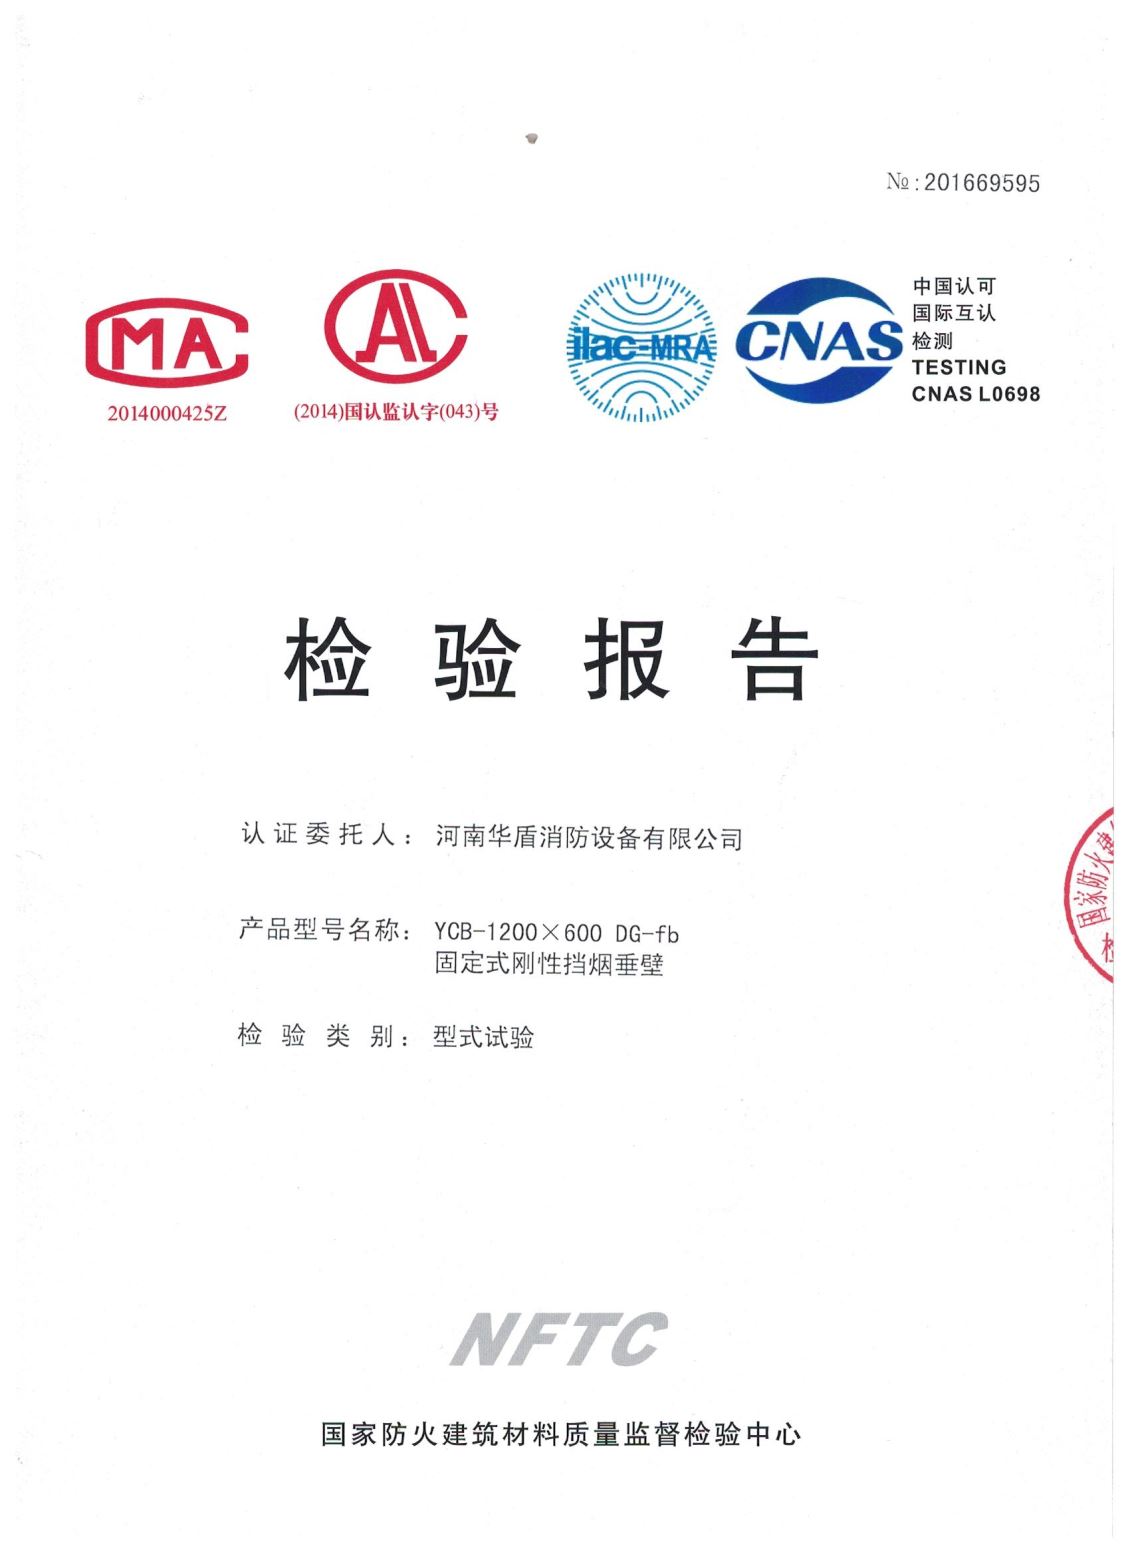 郑州YCB-1200X600 DG-fb-检验报告